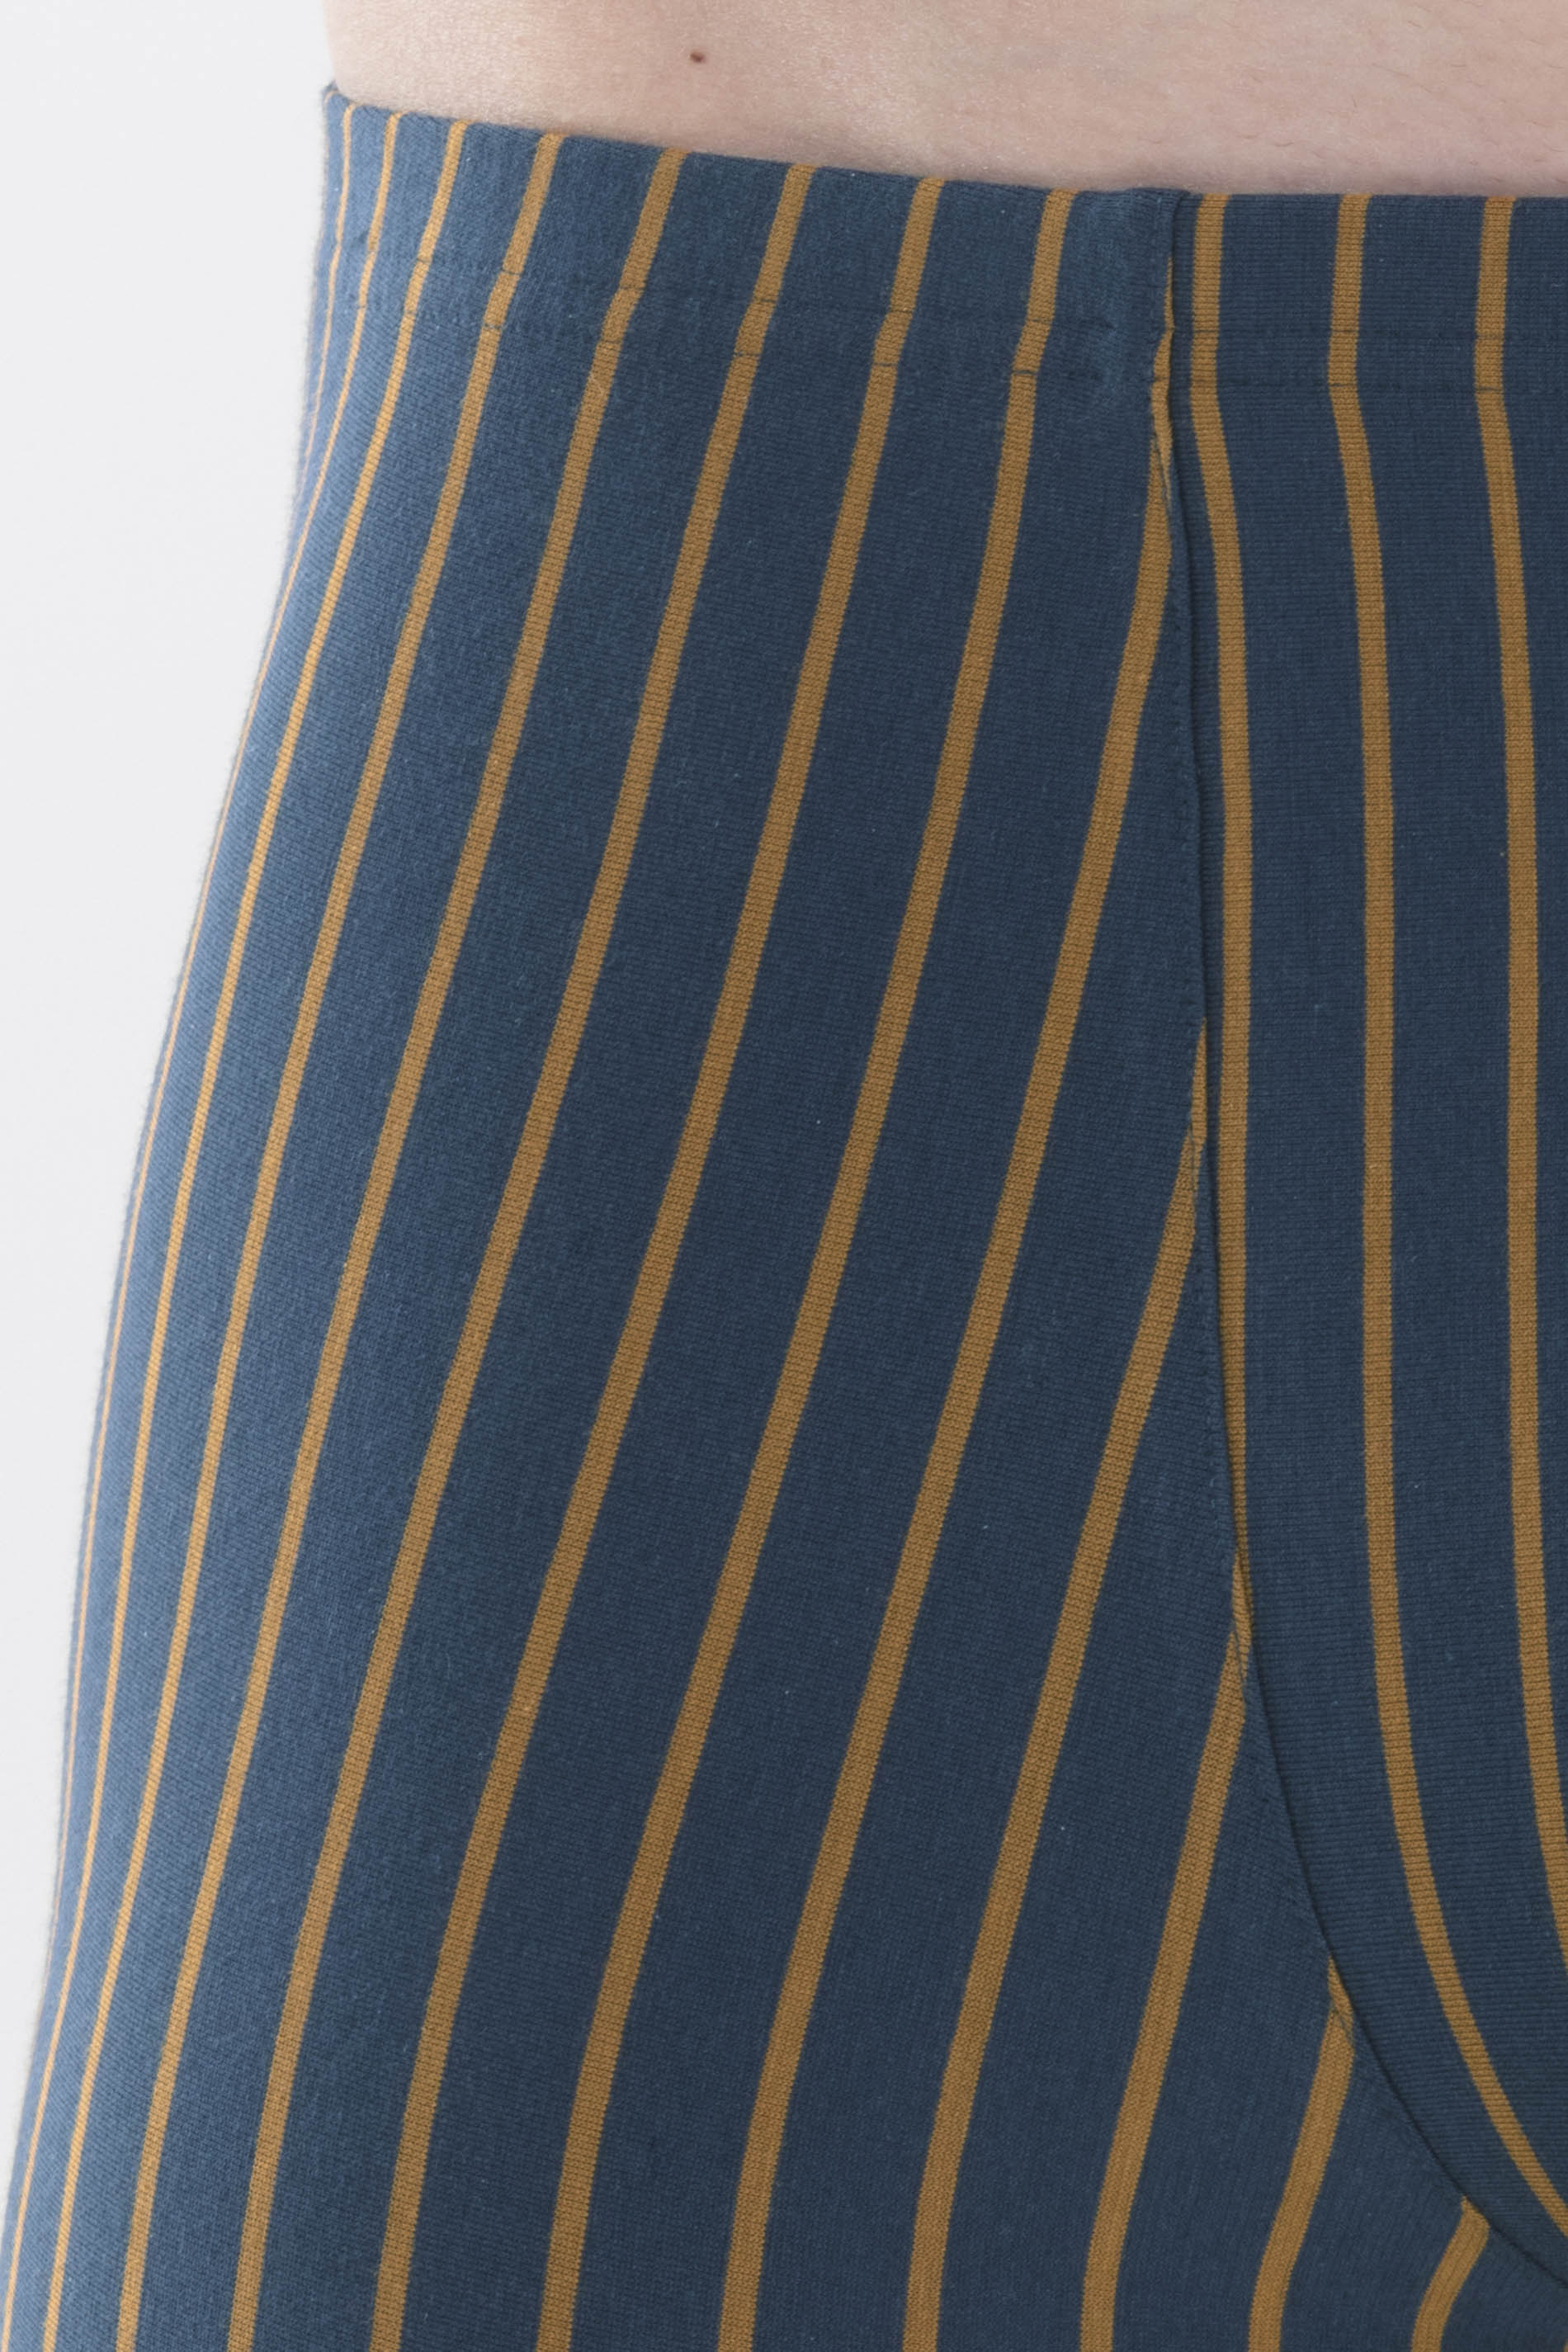 Shorty Yacht Blue Serie Bi Col Stripes Detail View 01 | mey®